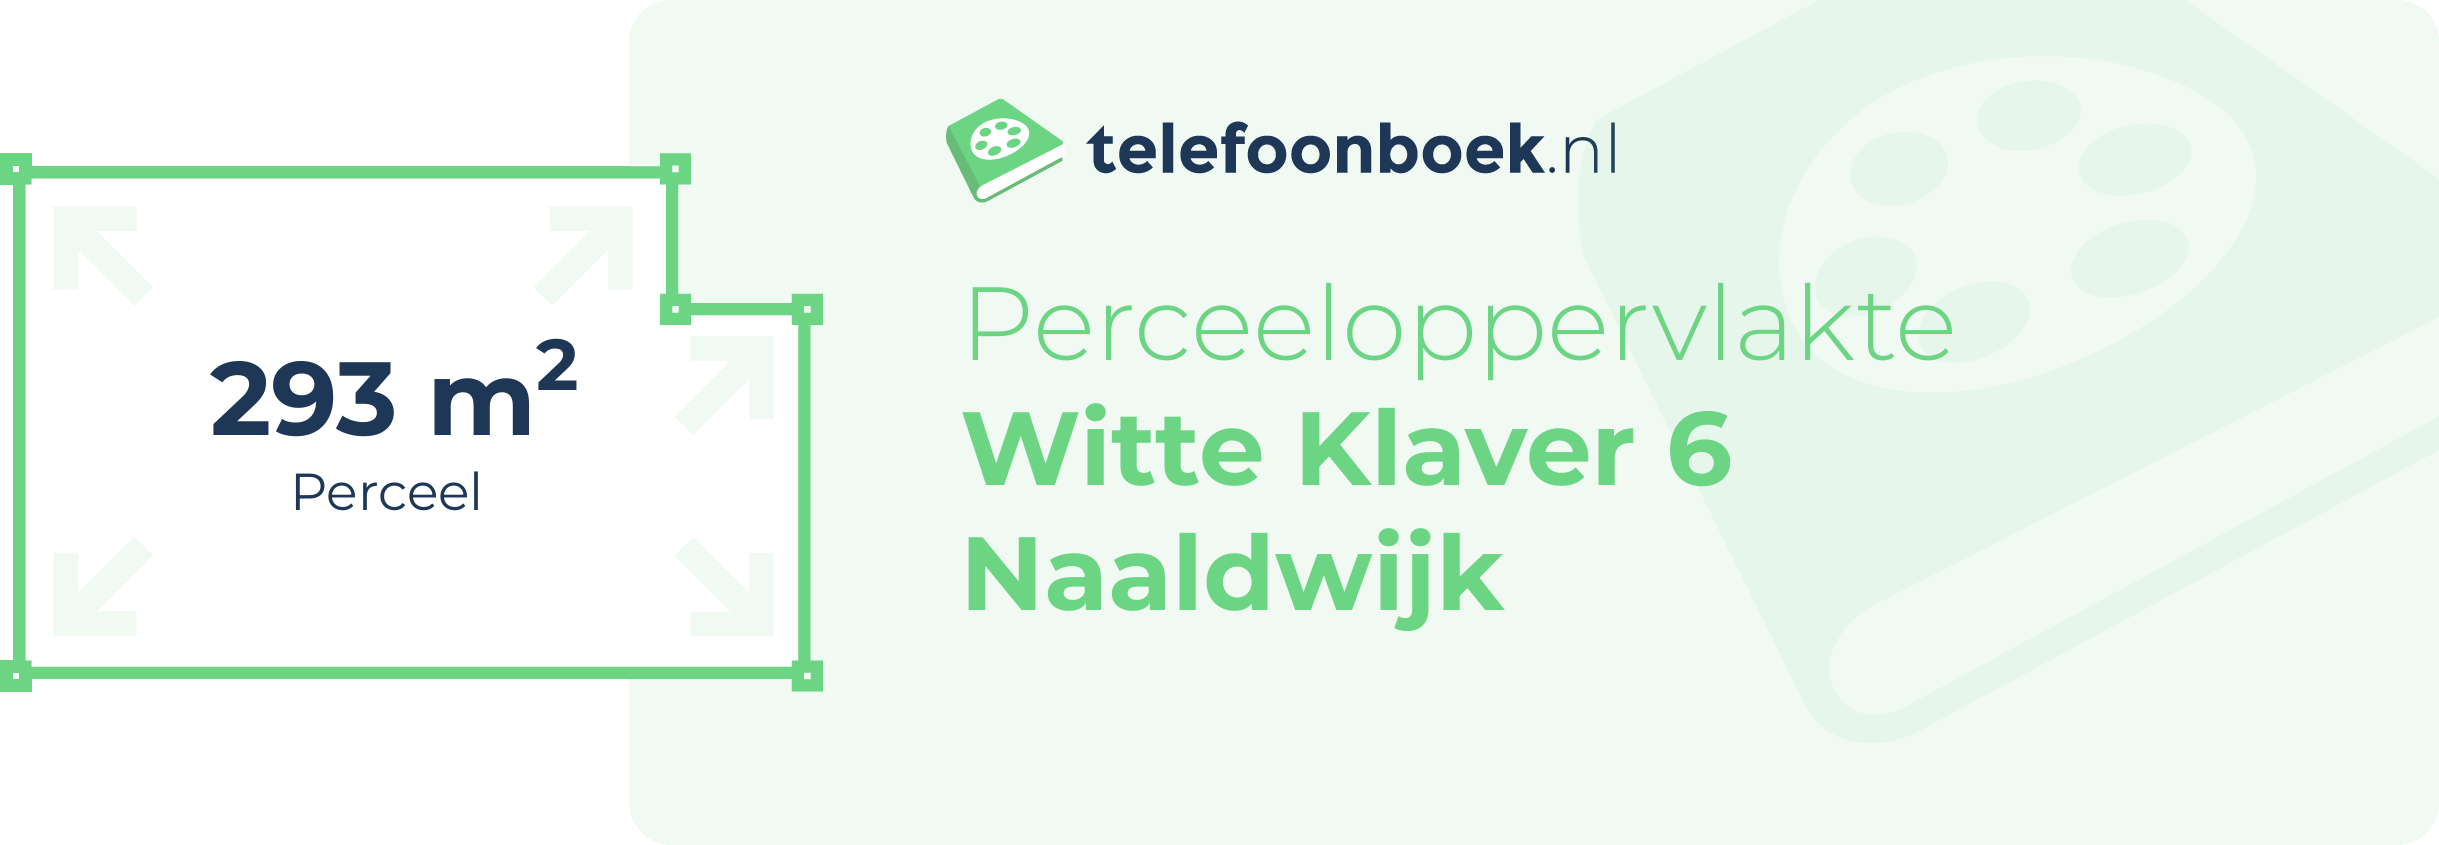 Perceeloppervlakte Witte Klaver 6 Naaldwijk